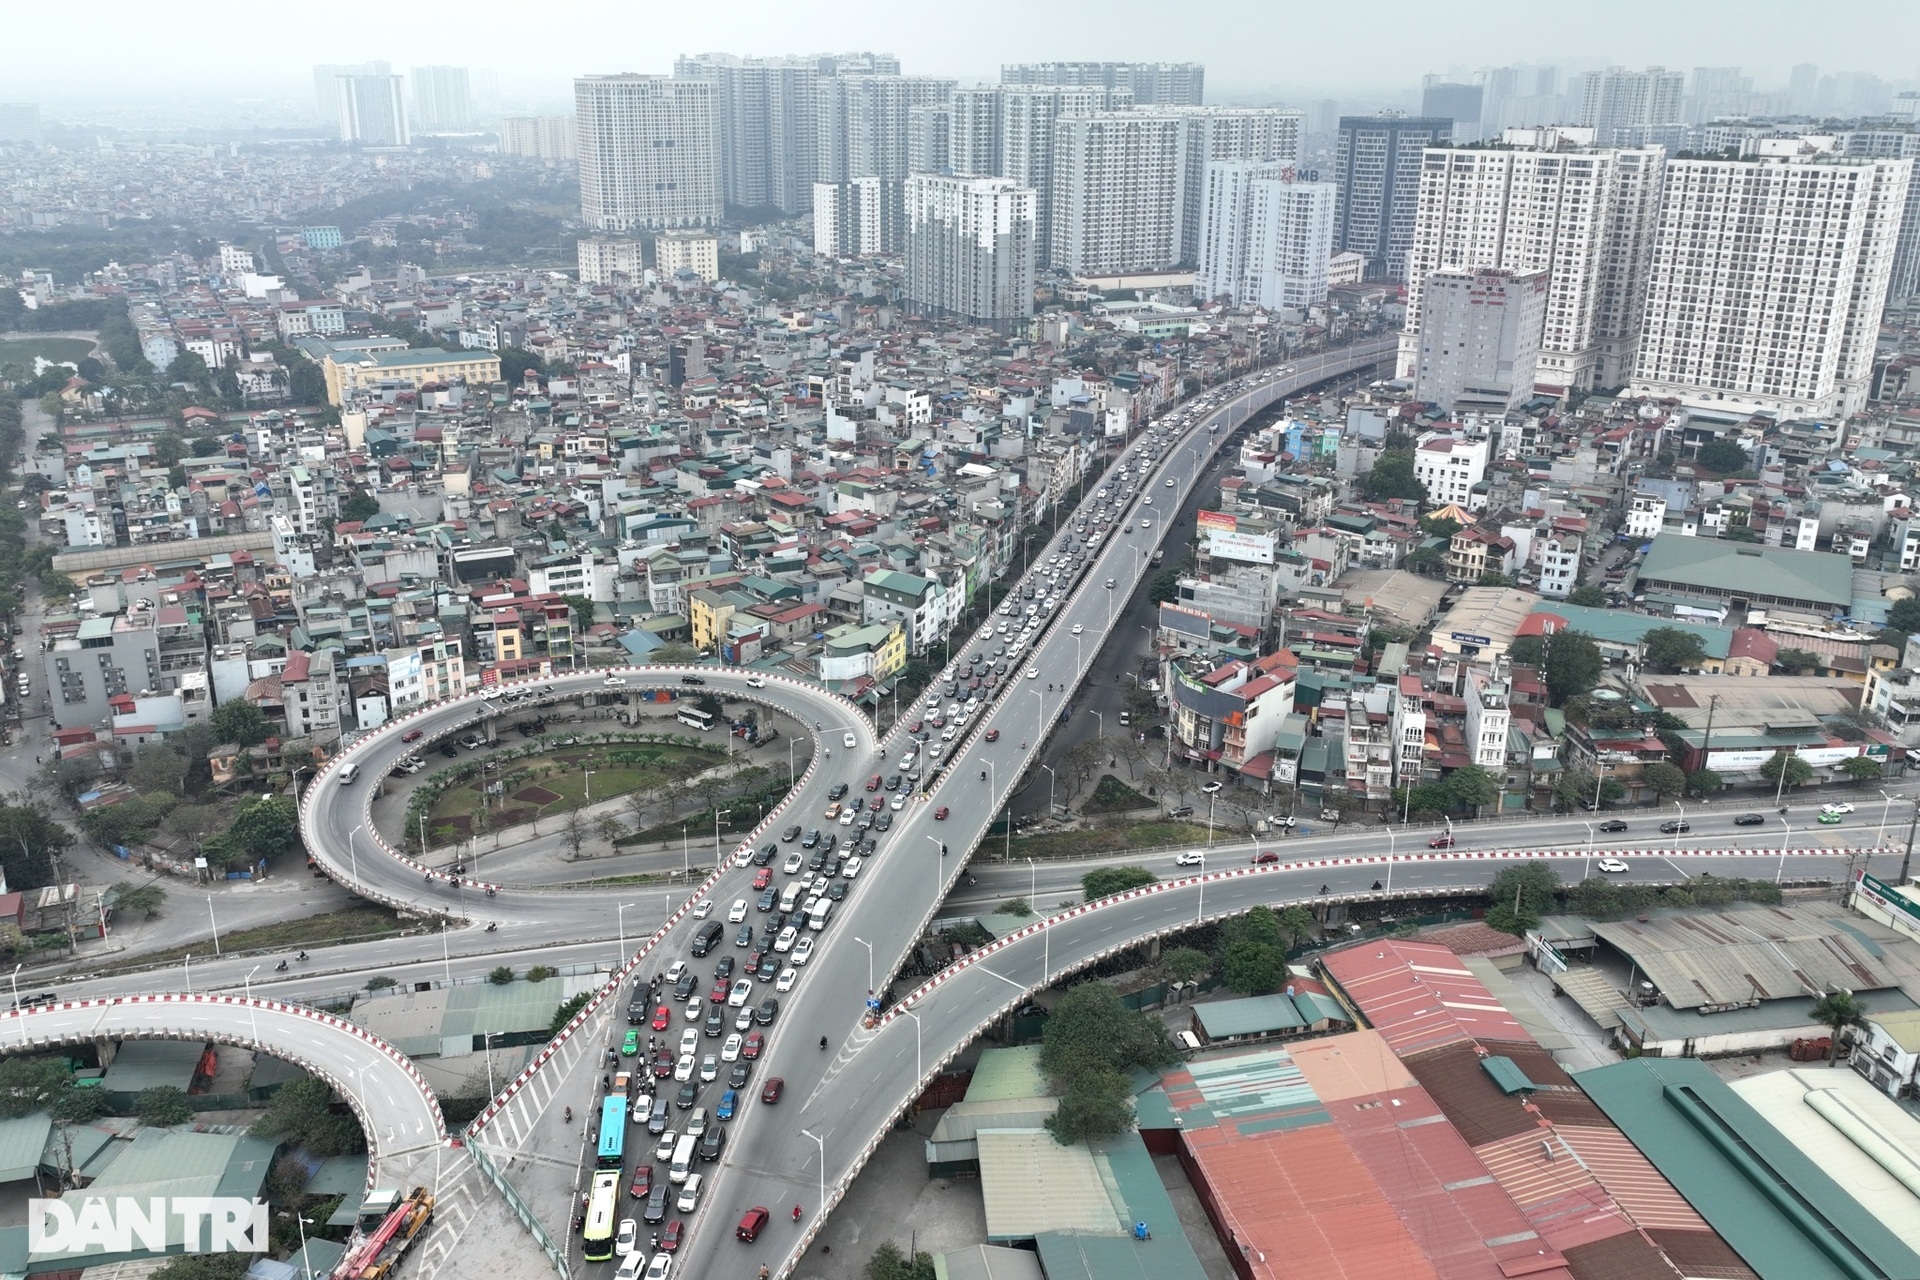 Mùng 2 Tết: Hà Nội ùn tắc nhiều kilomet đường vanh đai 3 trên cao